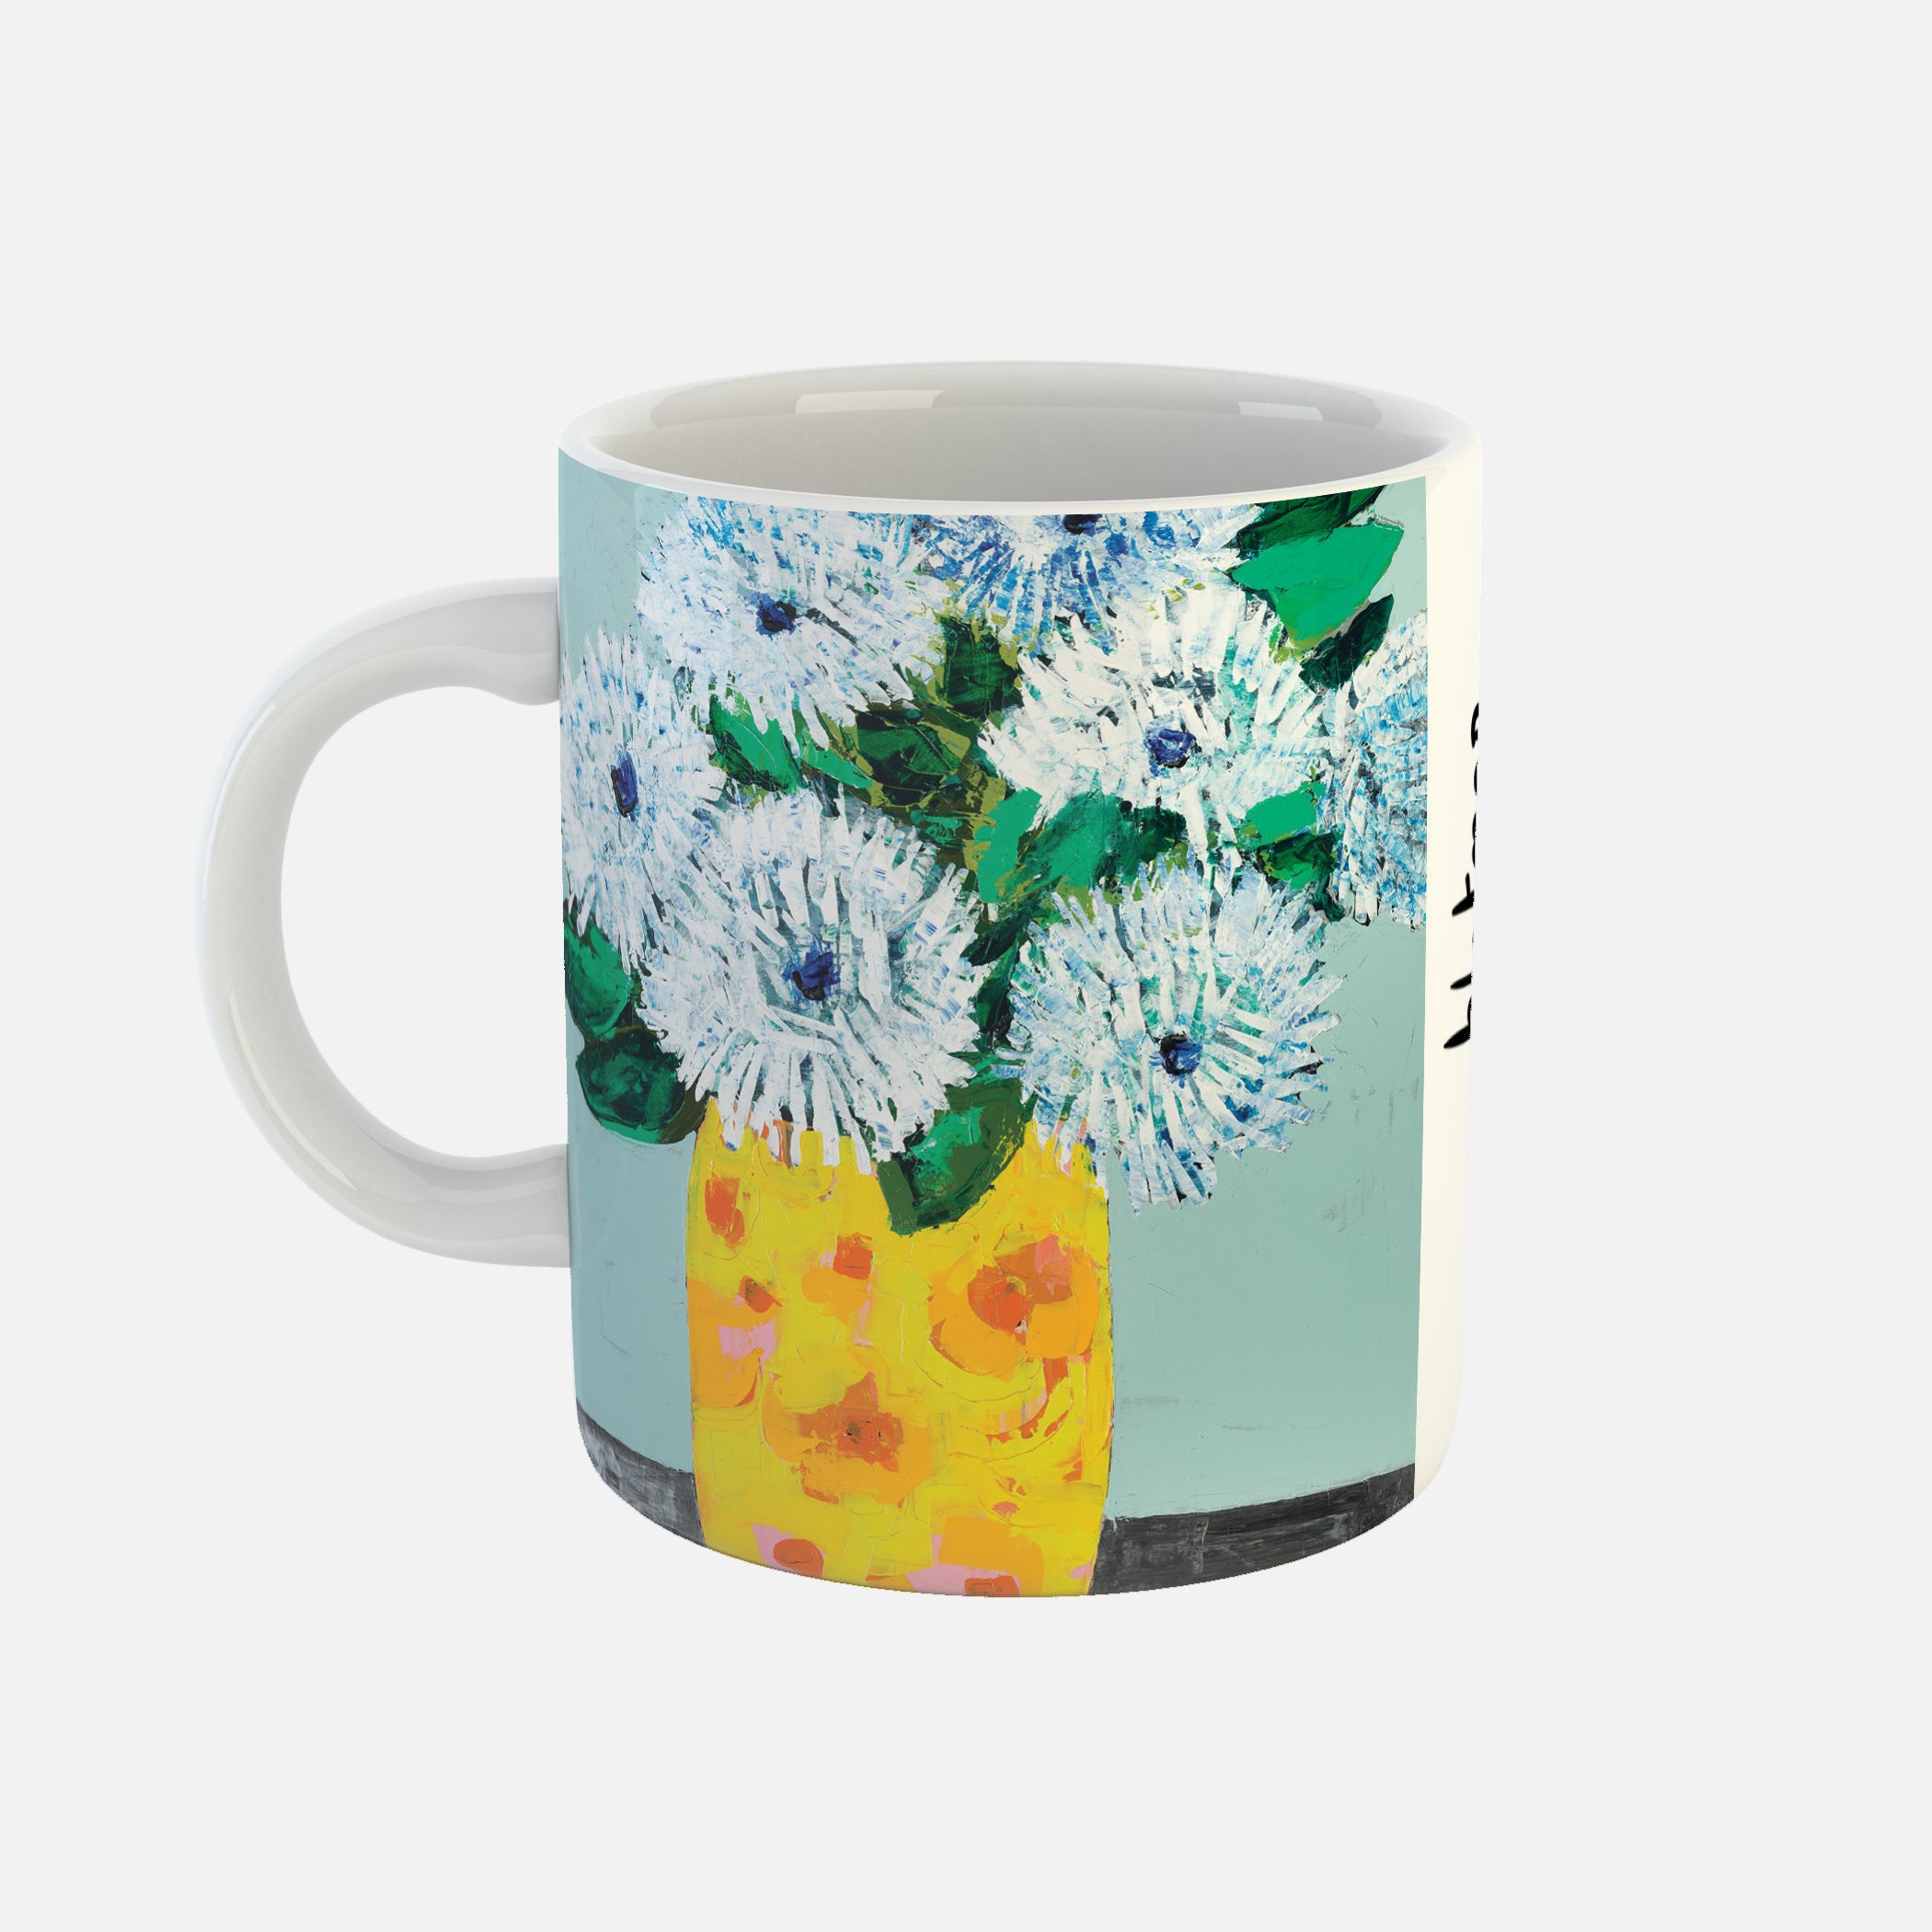 Adler - Ceramic Mug